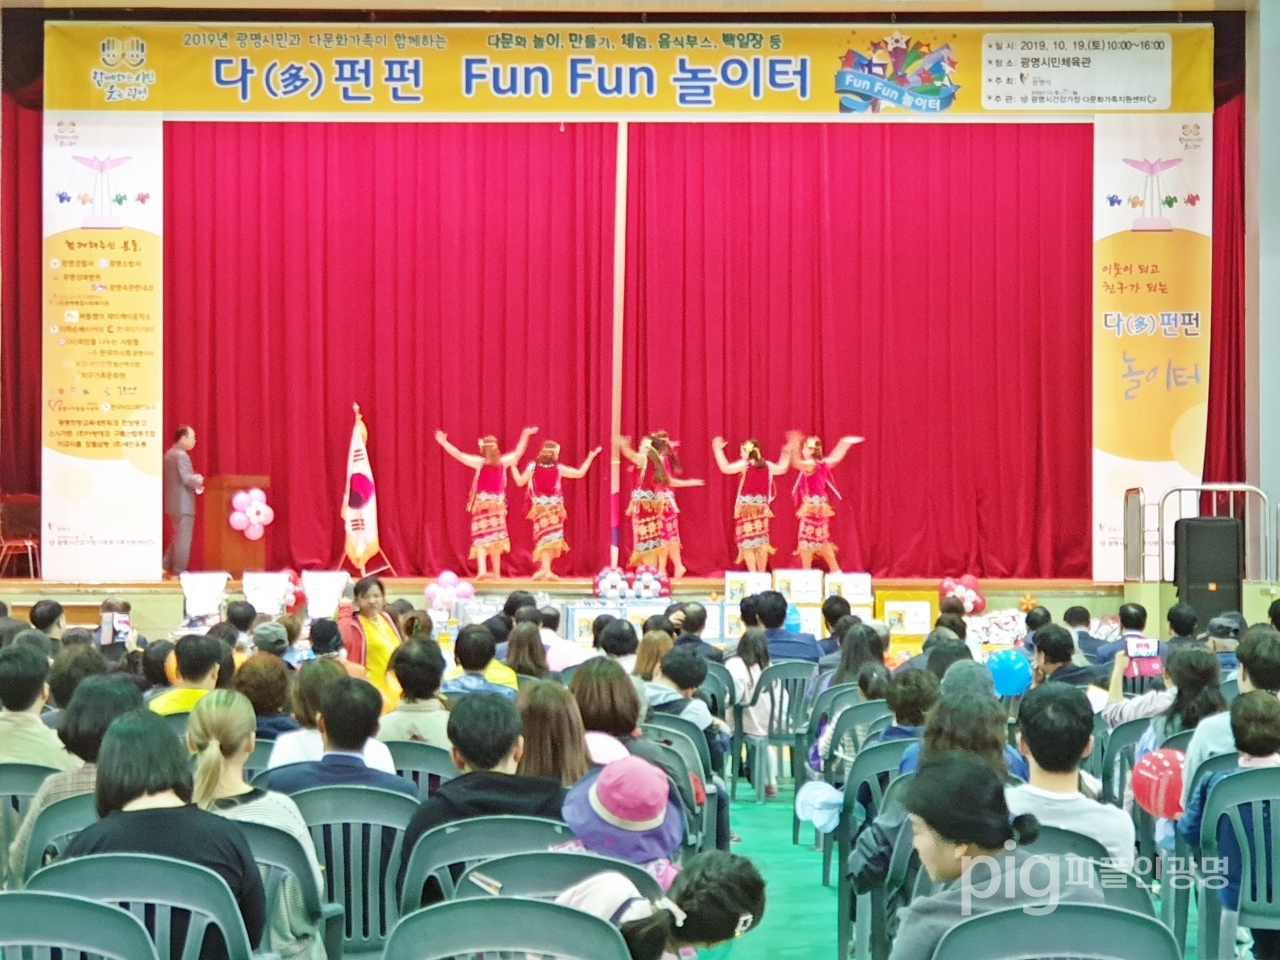 광명시 건강가정·다문화가족지원센터는 10월 19일 광명시민체육관에서 시민과 다문화가족이 함께하는 ‘다(多) 펀펀(fun fun) 놀이터’를 개최했다. / 사진 건강가정·다문화가족지원센터 제공